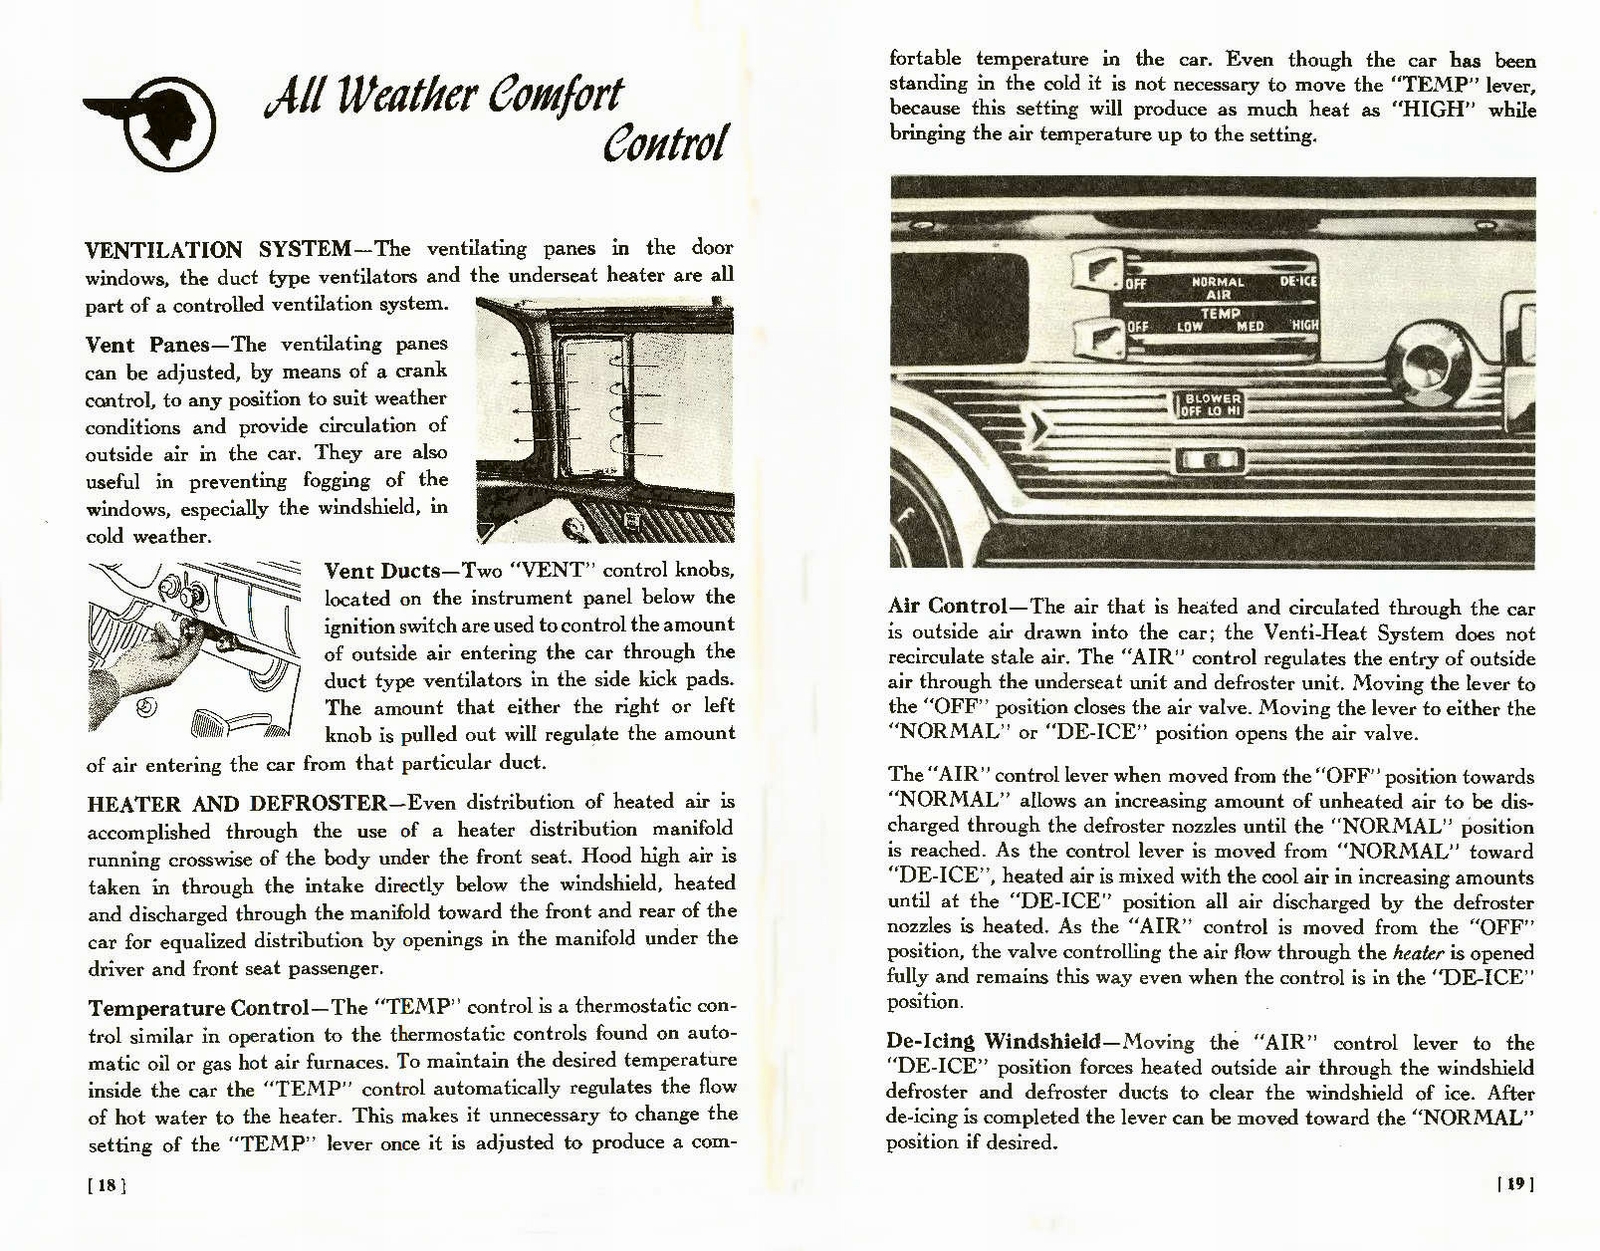 n_1957 Pontiac Owners Guide-18-19.jpg